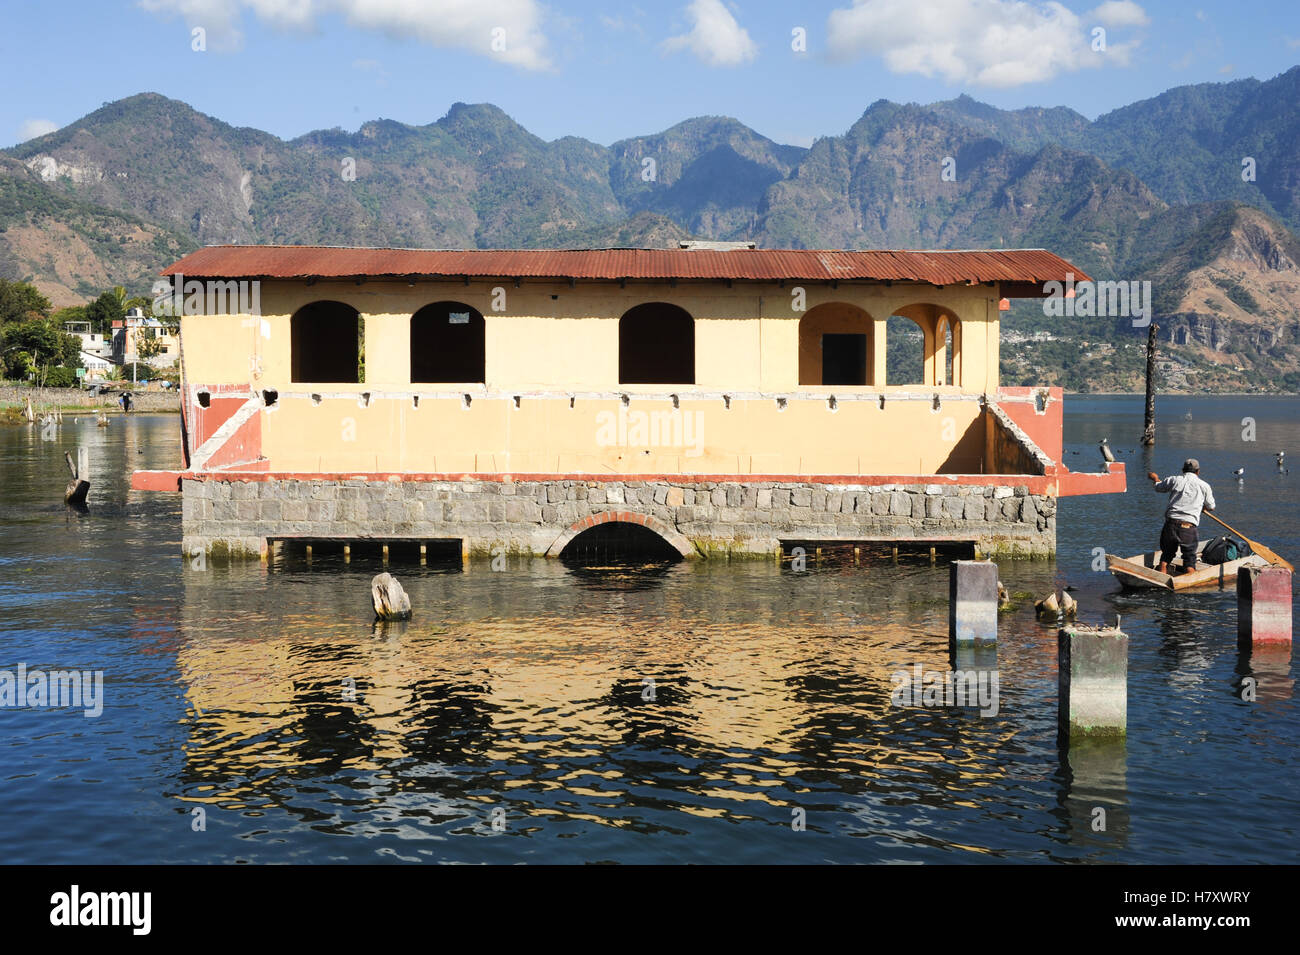 Casa inundada en San Pedro en el lago de Atitlán, Guatemala Foto de stock